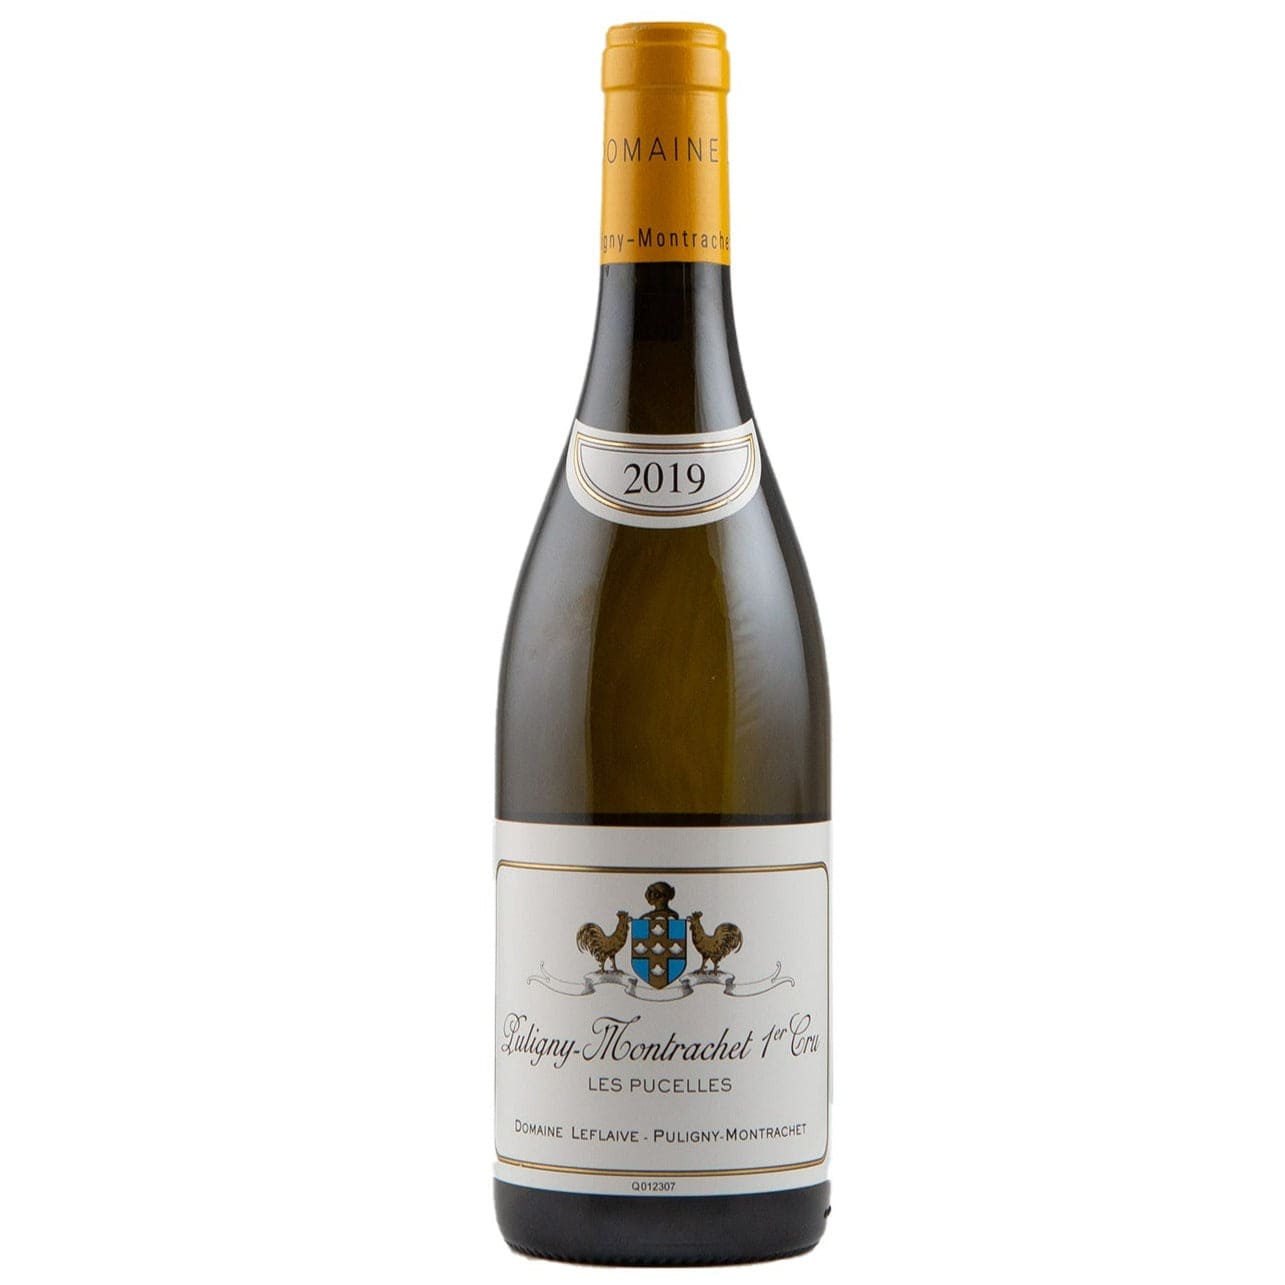 Single bottle of White wine Dom. Leflaive, Les Pucelles Premier Cru, Puligny-Montrachet, 2019 100% Chardonnay